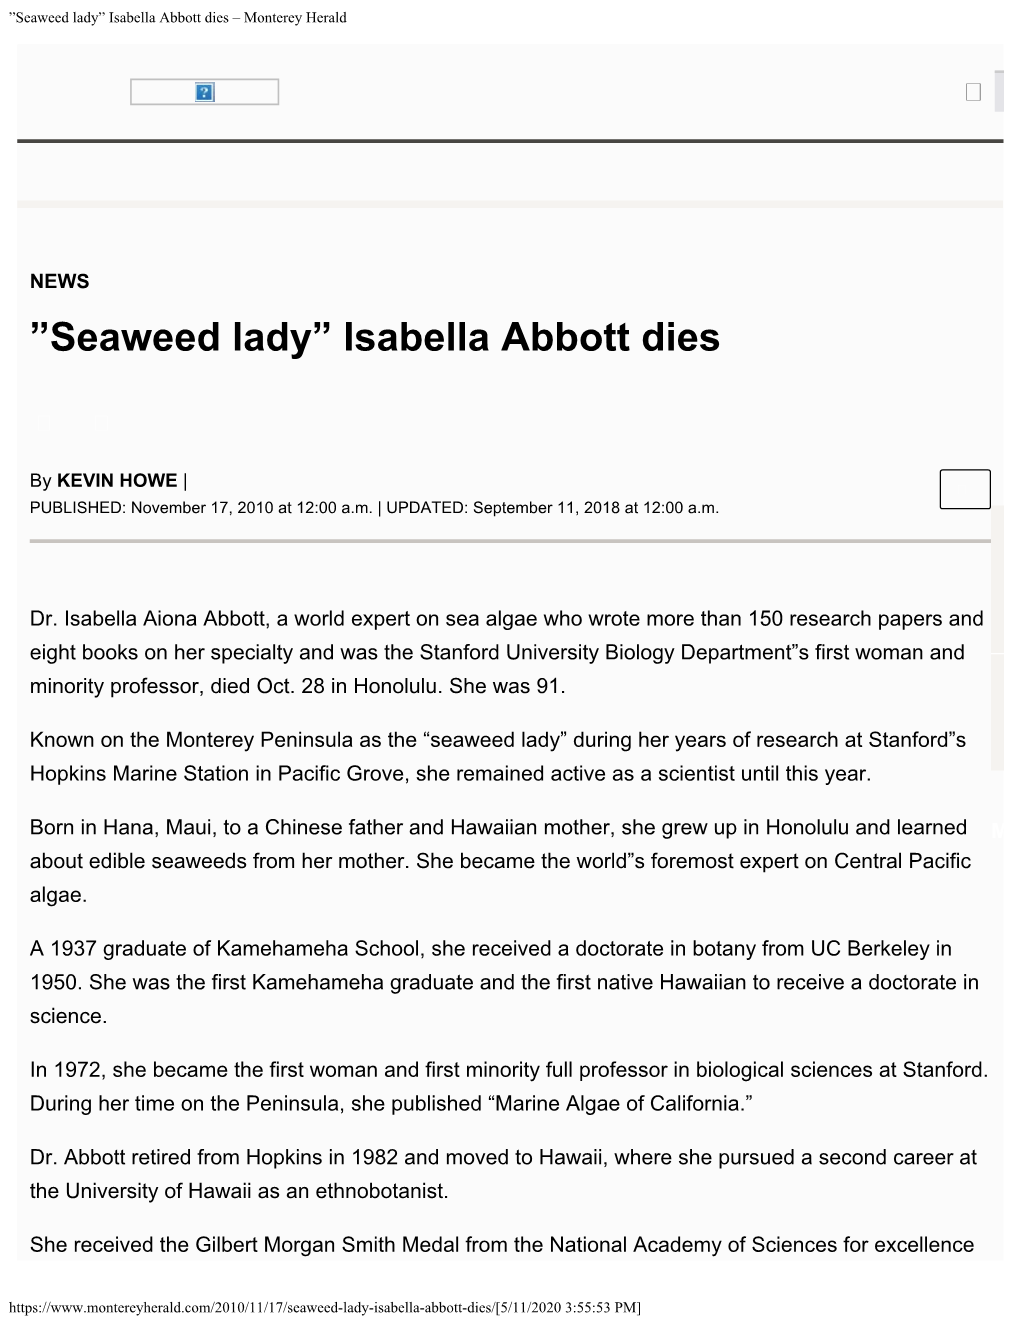 ”Seaweed Lady” Isabella Abbott Dies – Monterey Herald